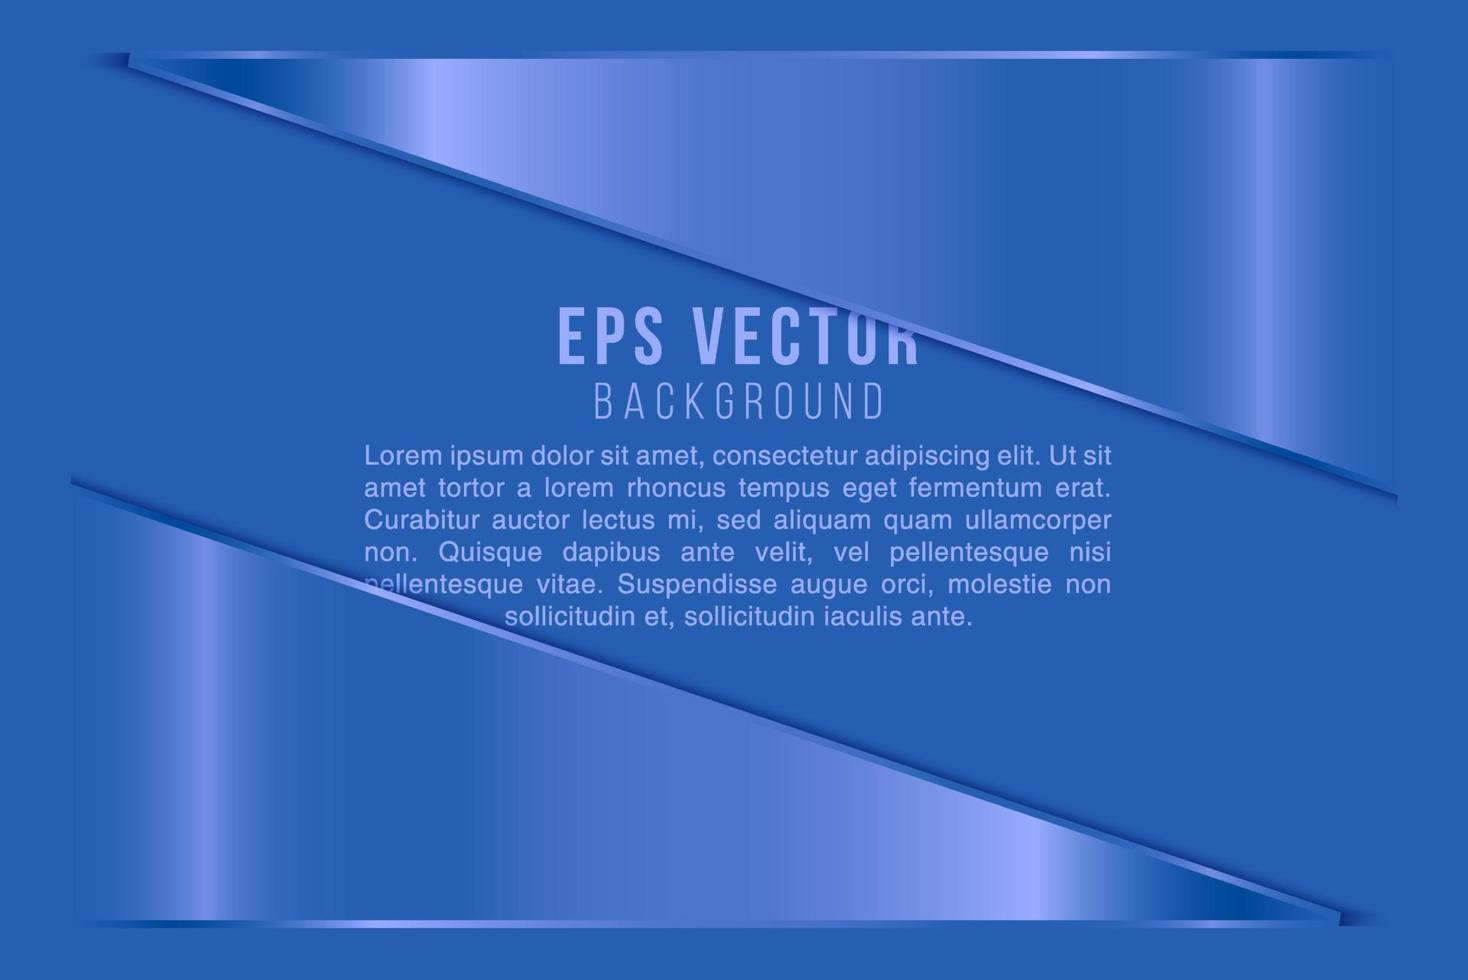 design de onda azul abstrato, plano de fundo, conceito de comunicação vetorial, sobreposição, espaço em branco vetor